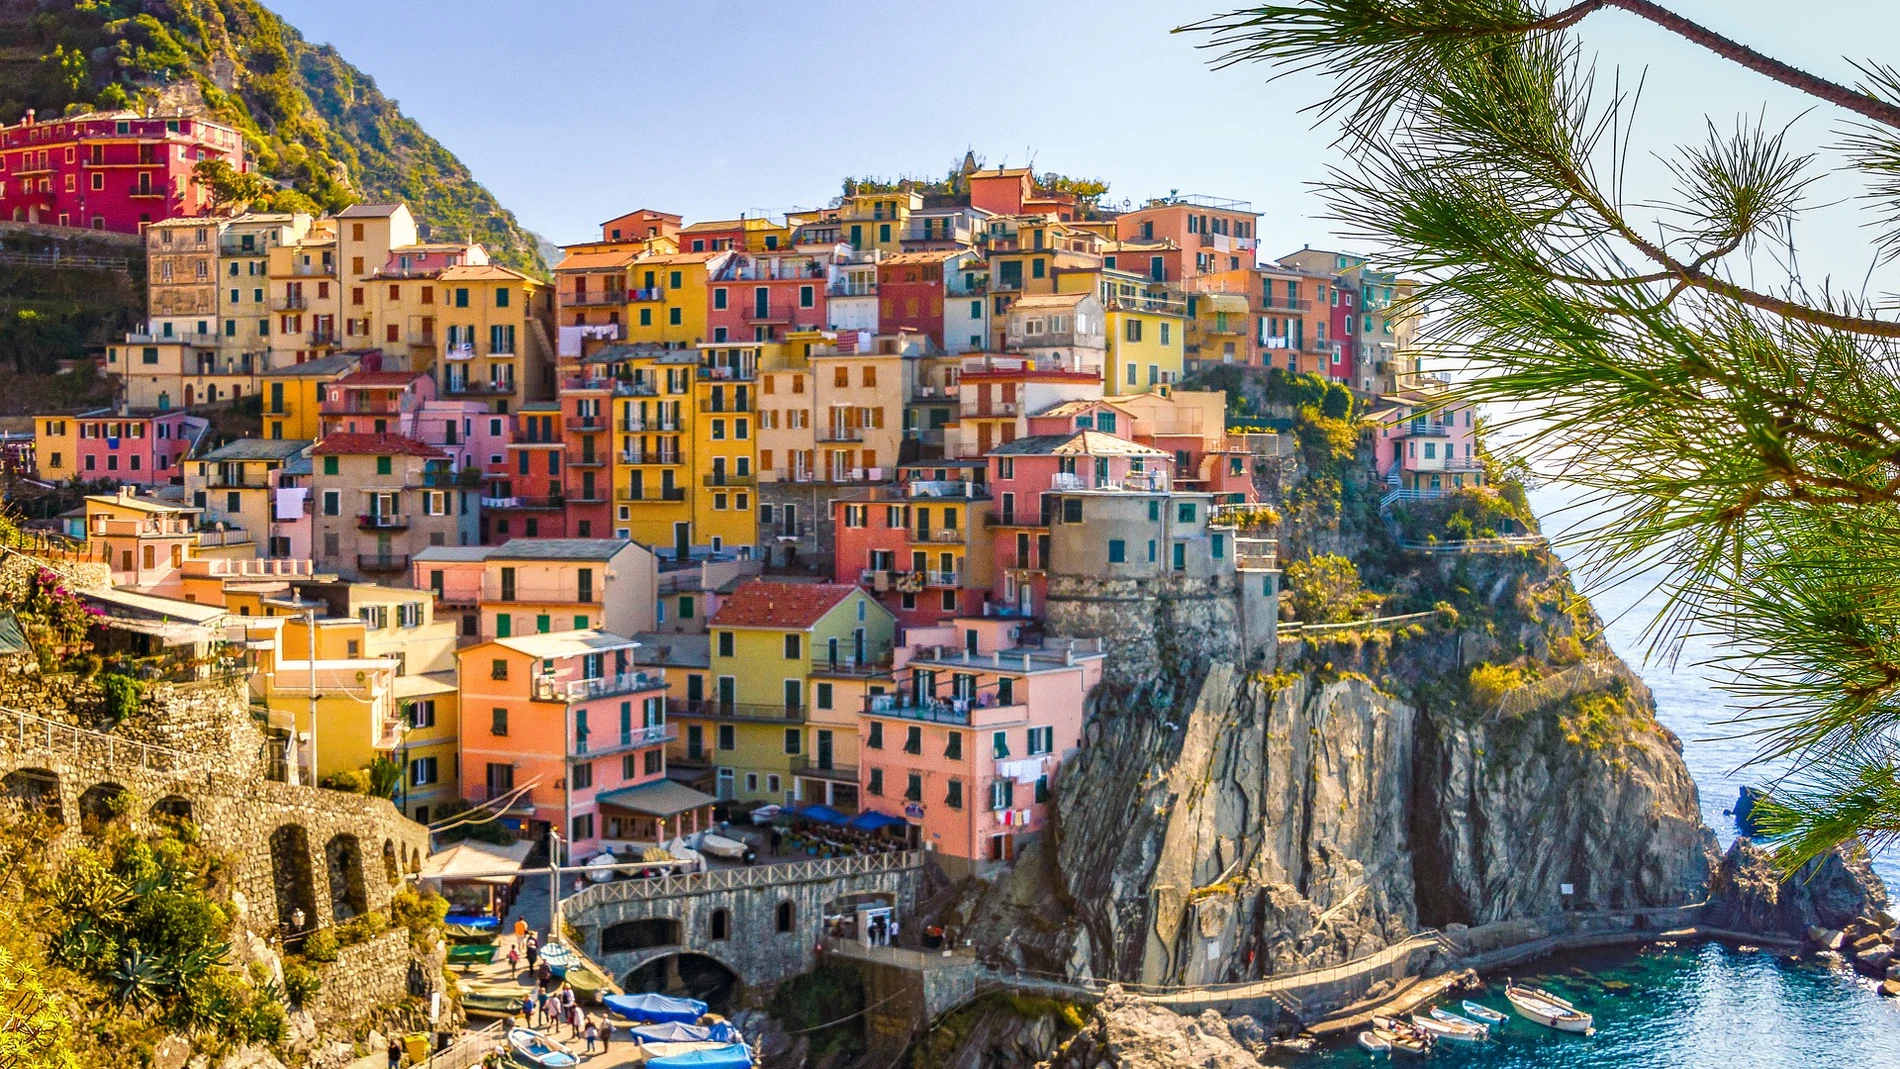 Imagen de las casas de un pueblo costero en Italia.